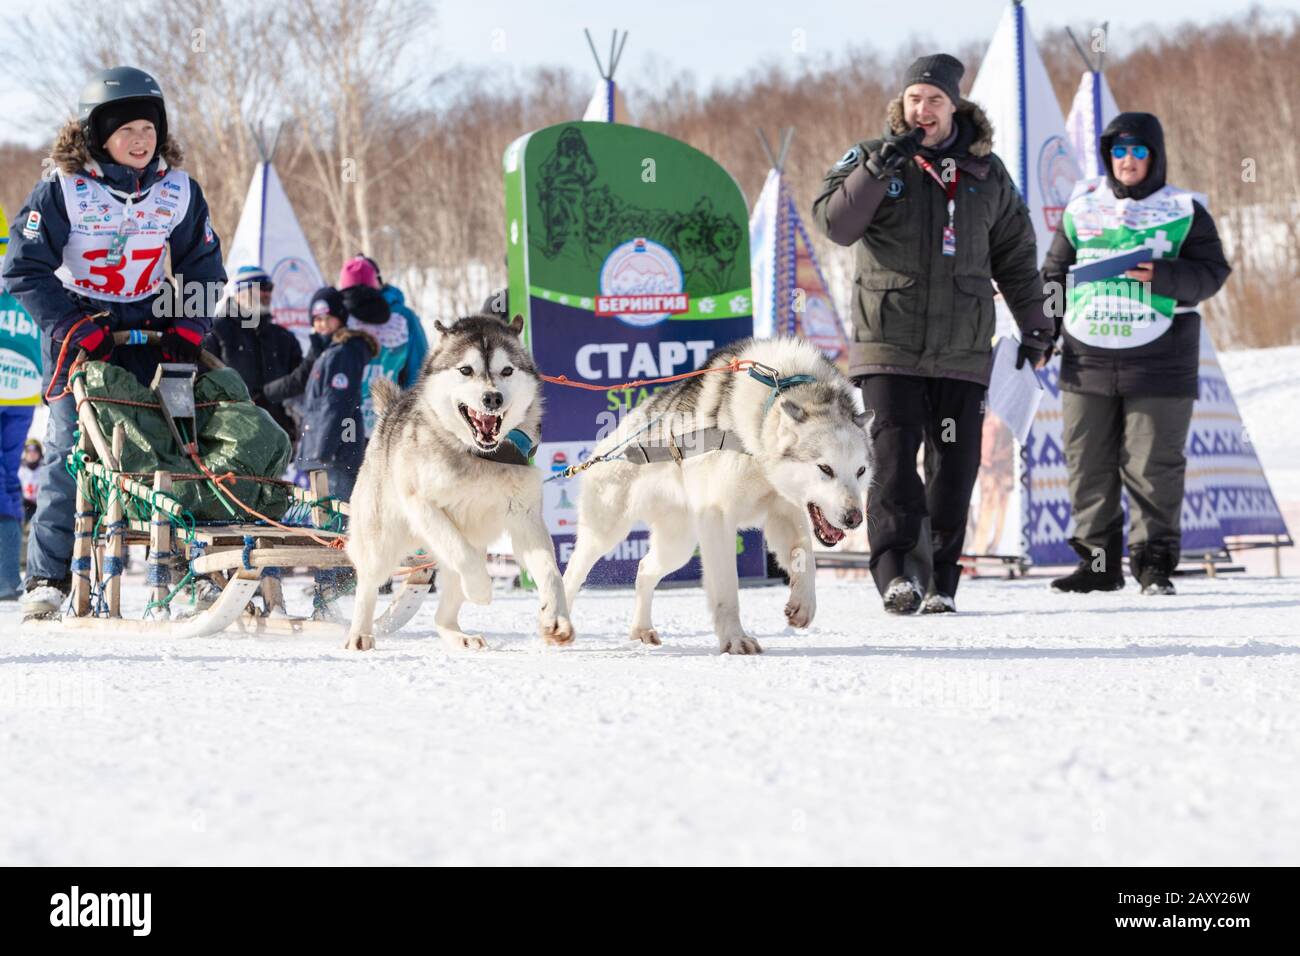 L'équipe masculine de chiens de traîneau à chiens, qui suit une course enneigée pendant les concours Kamchatka pour enfants Sledge Dog Race Dyulin (Beringia). Cit Petropavlovsk Banque D'Images